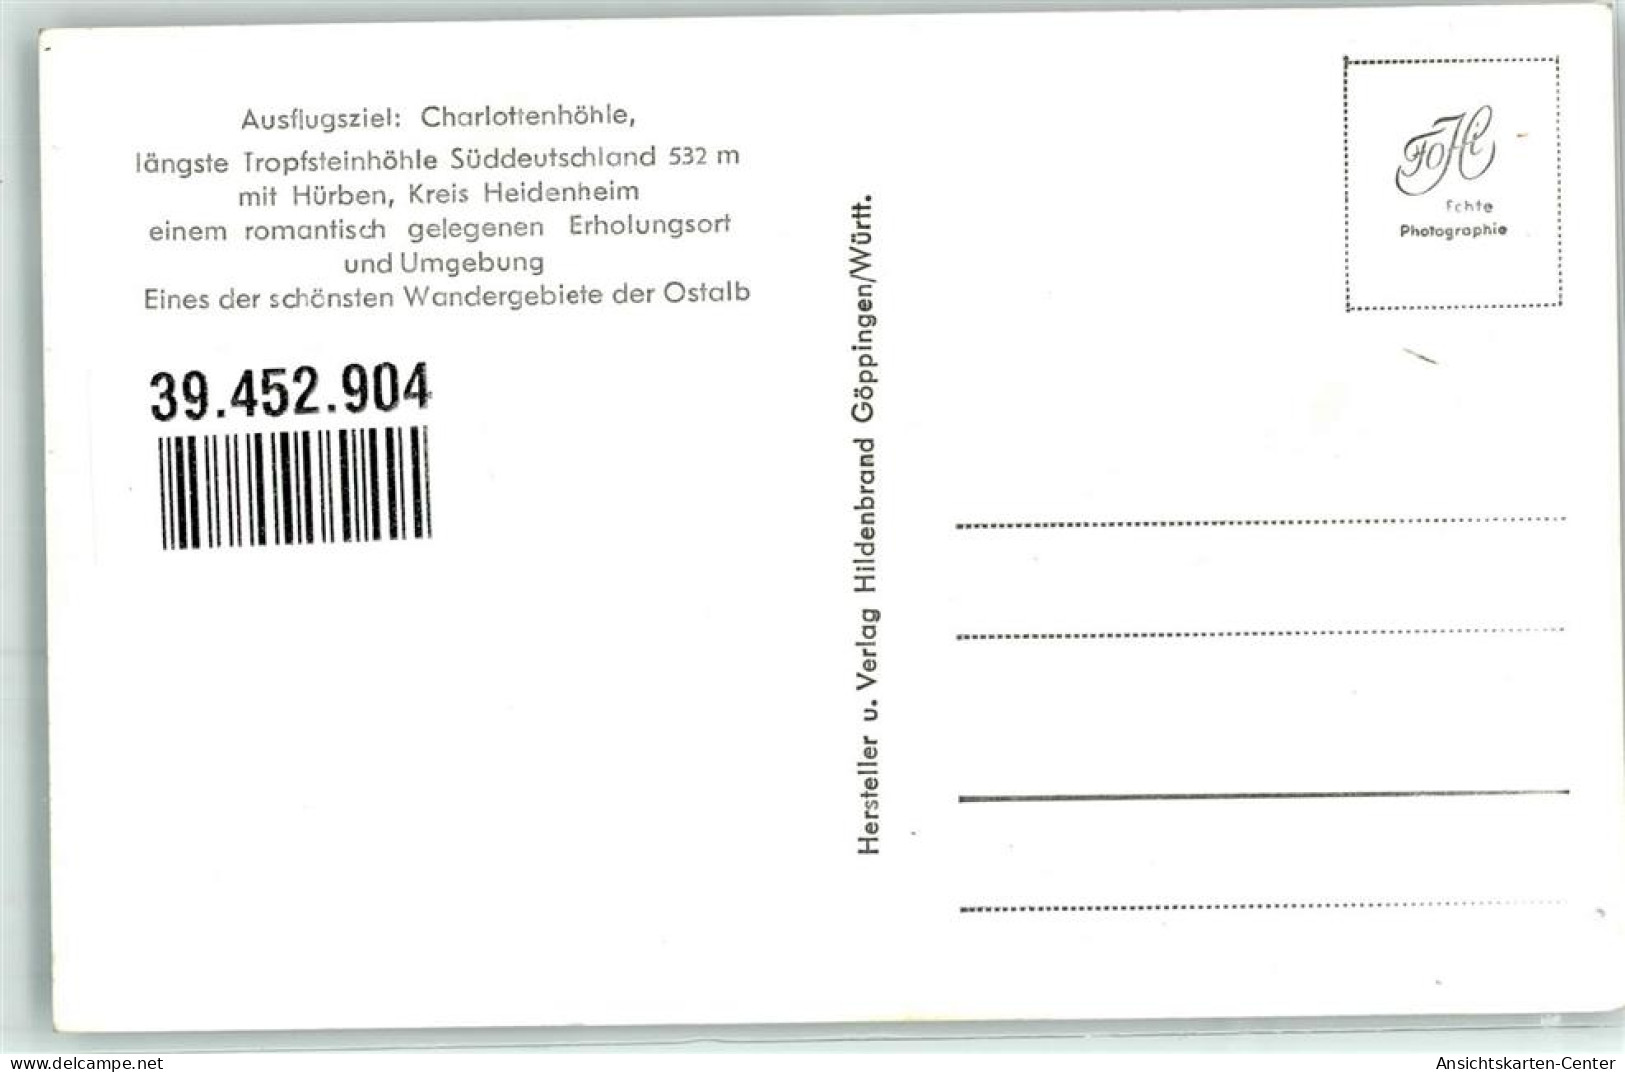 39452904 - Huerben - Heidenheim